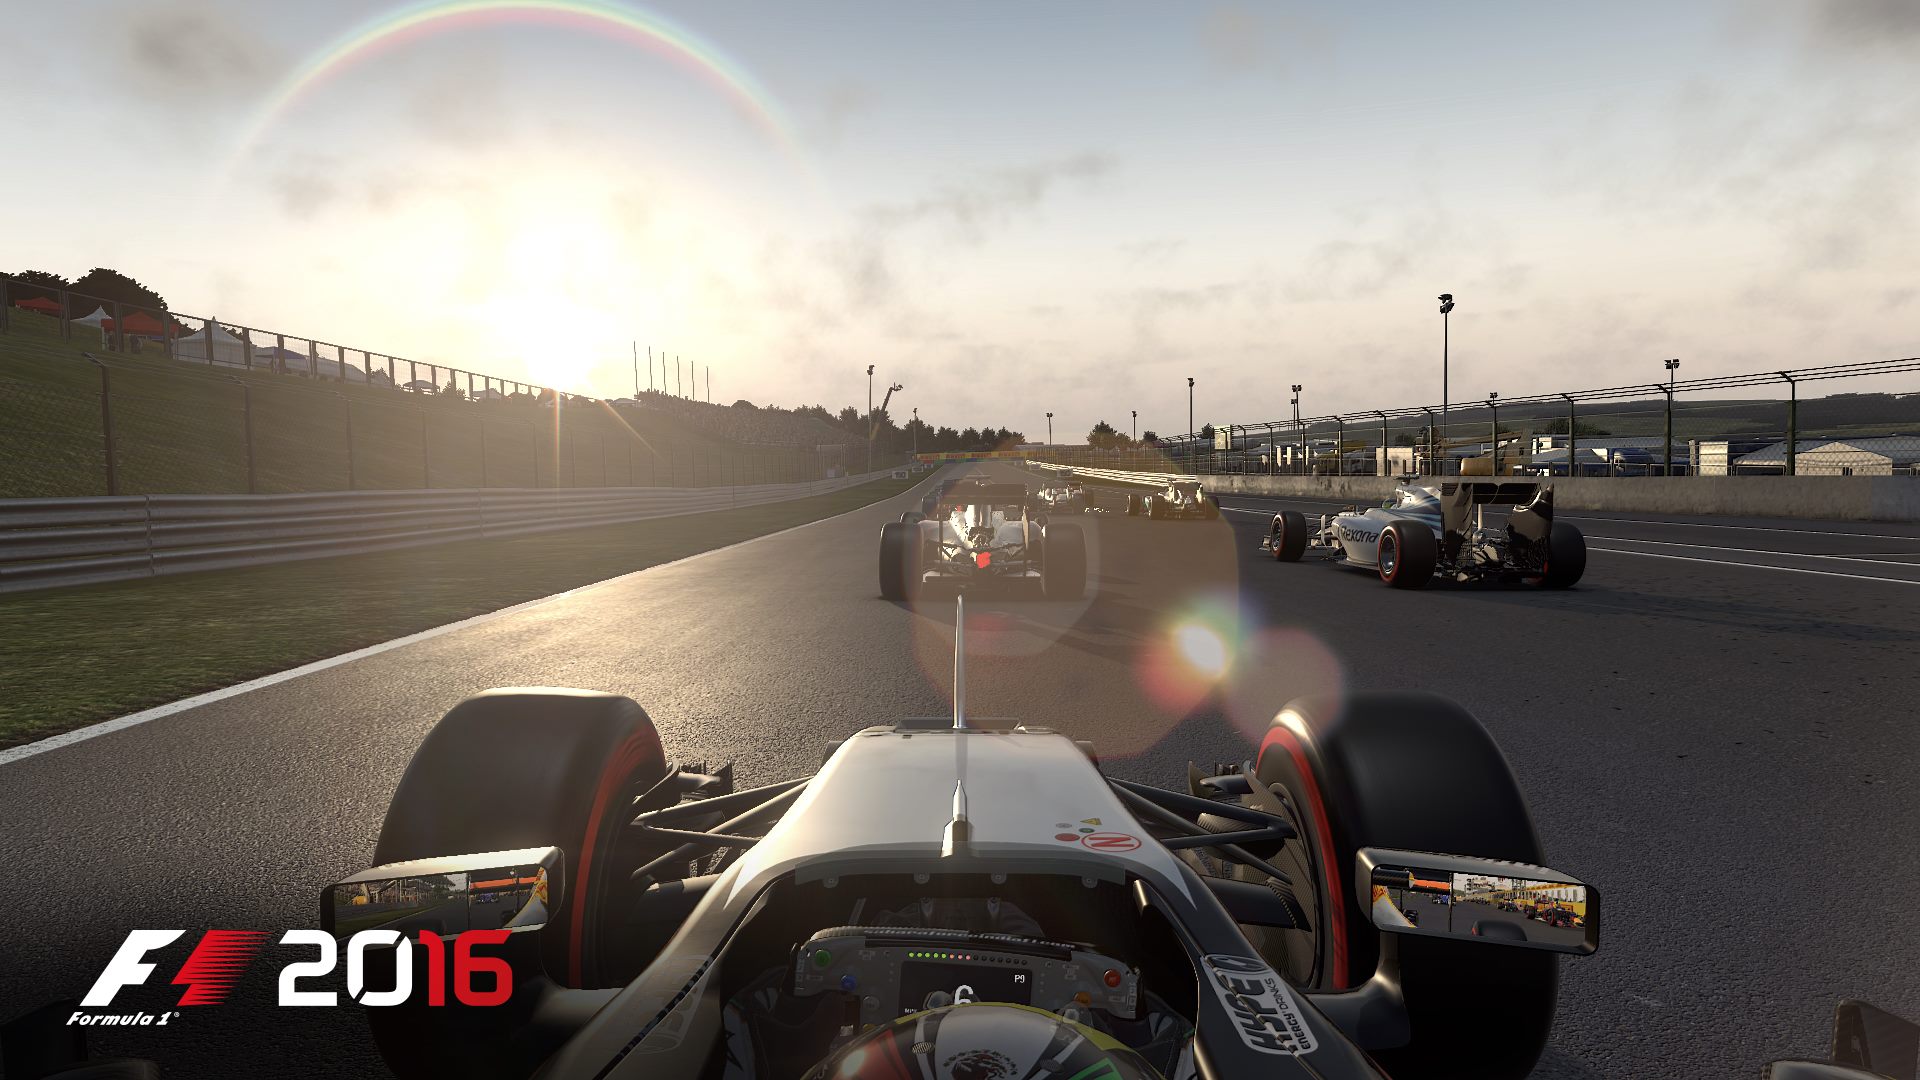 Jogo F1 2016 é anunciado para PC, Xbox One e PS4 - Conversa de Sofá